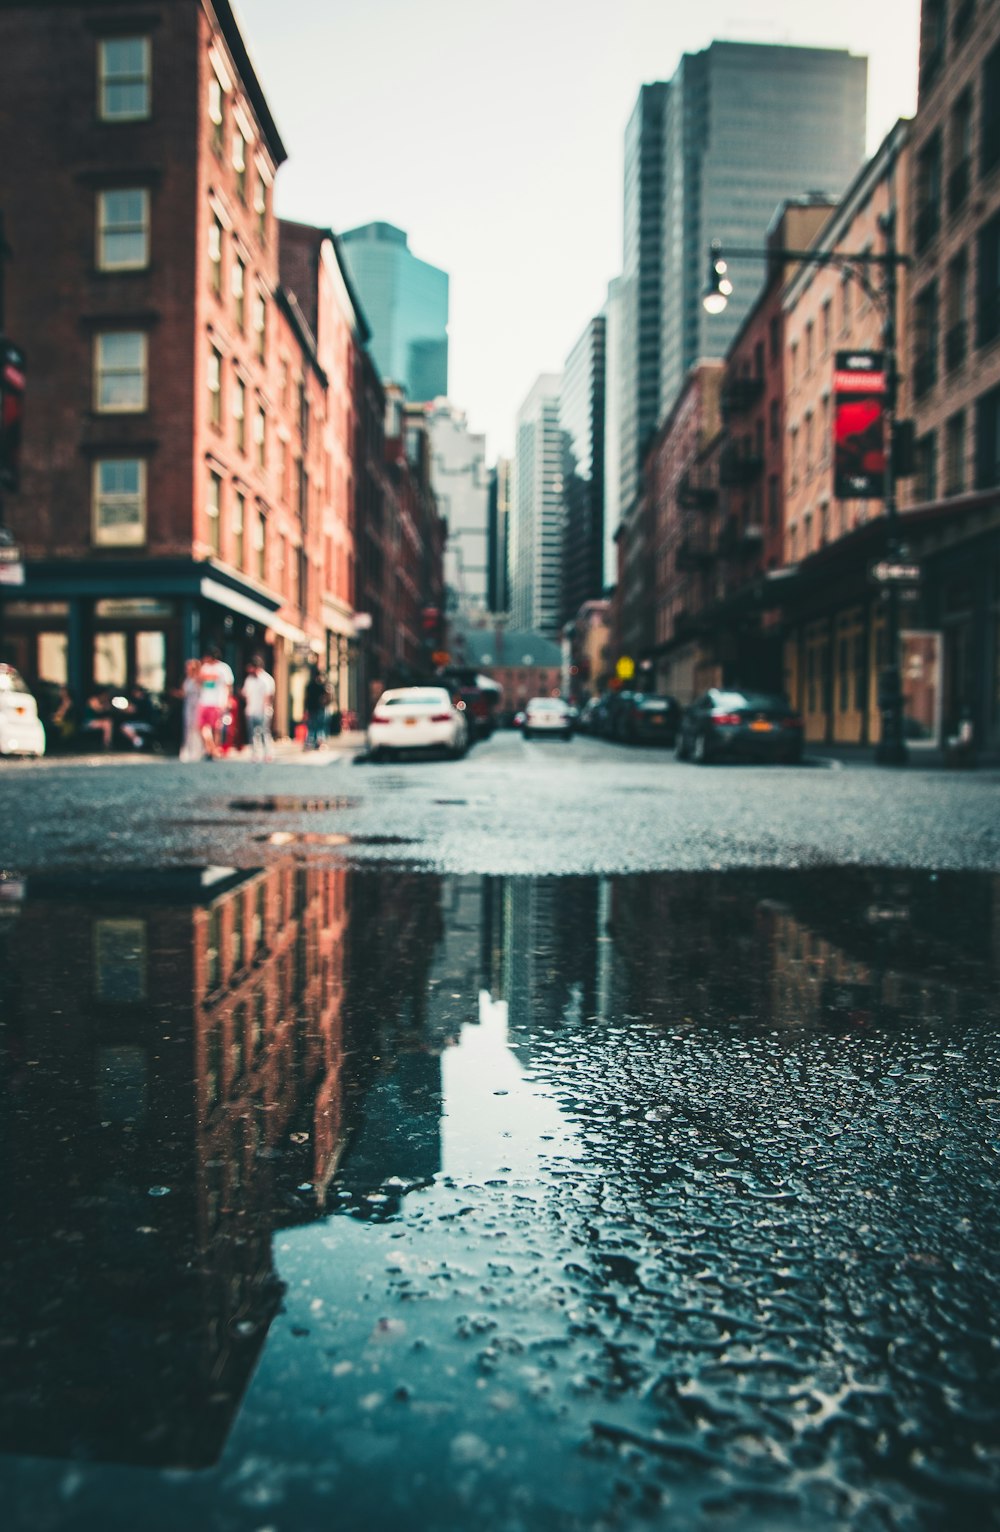 Voitures garées sur la rue humide de la ville